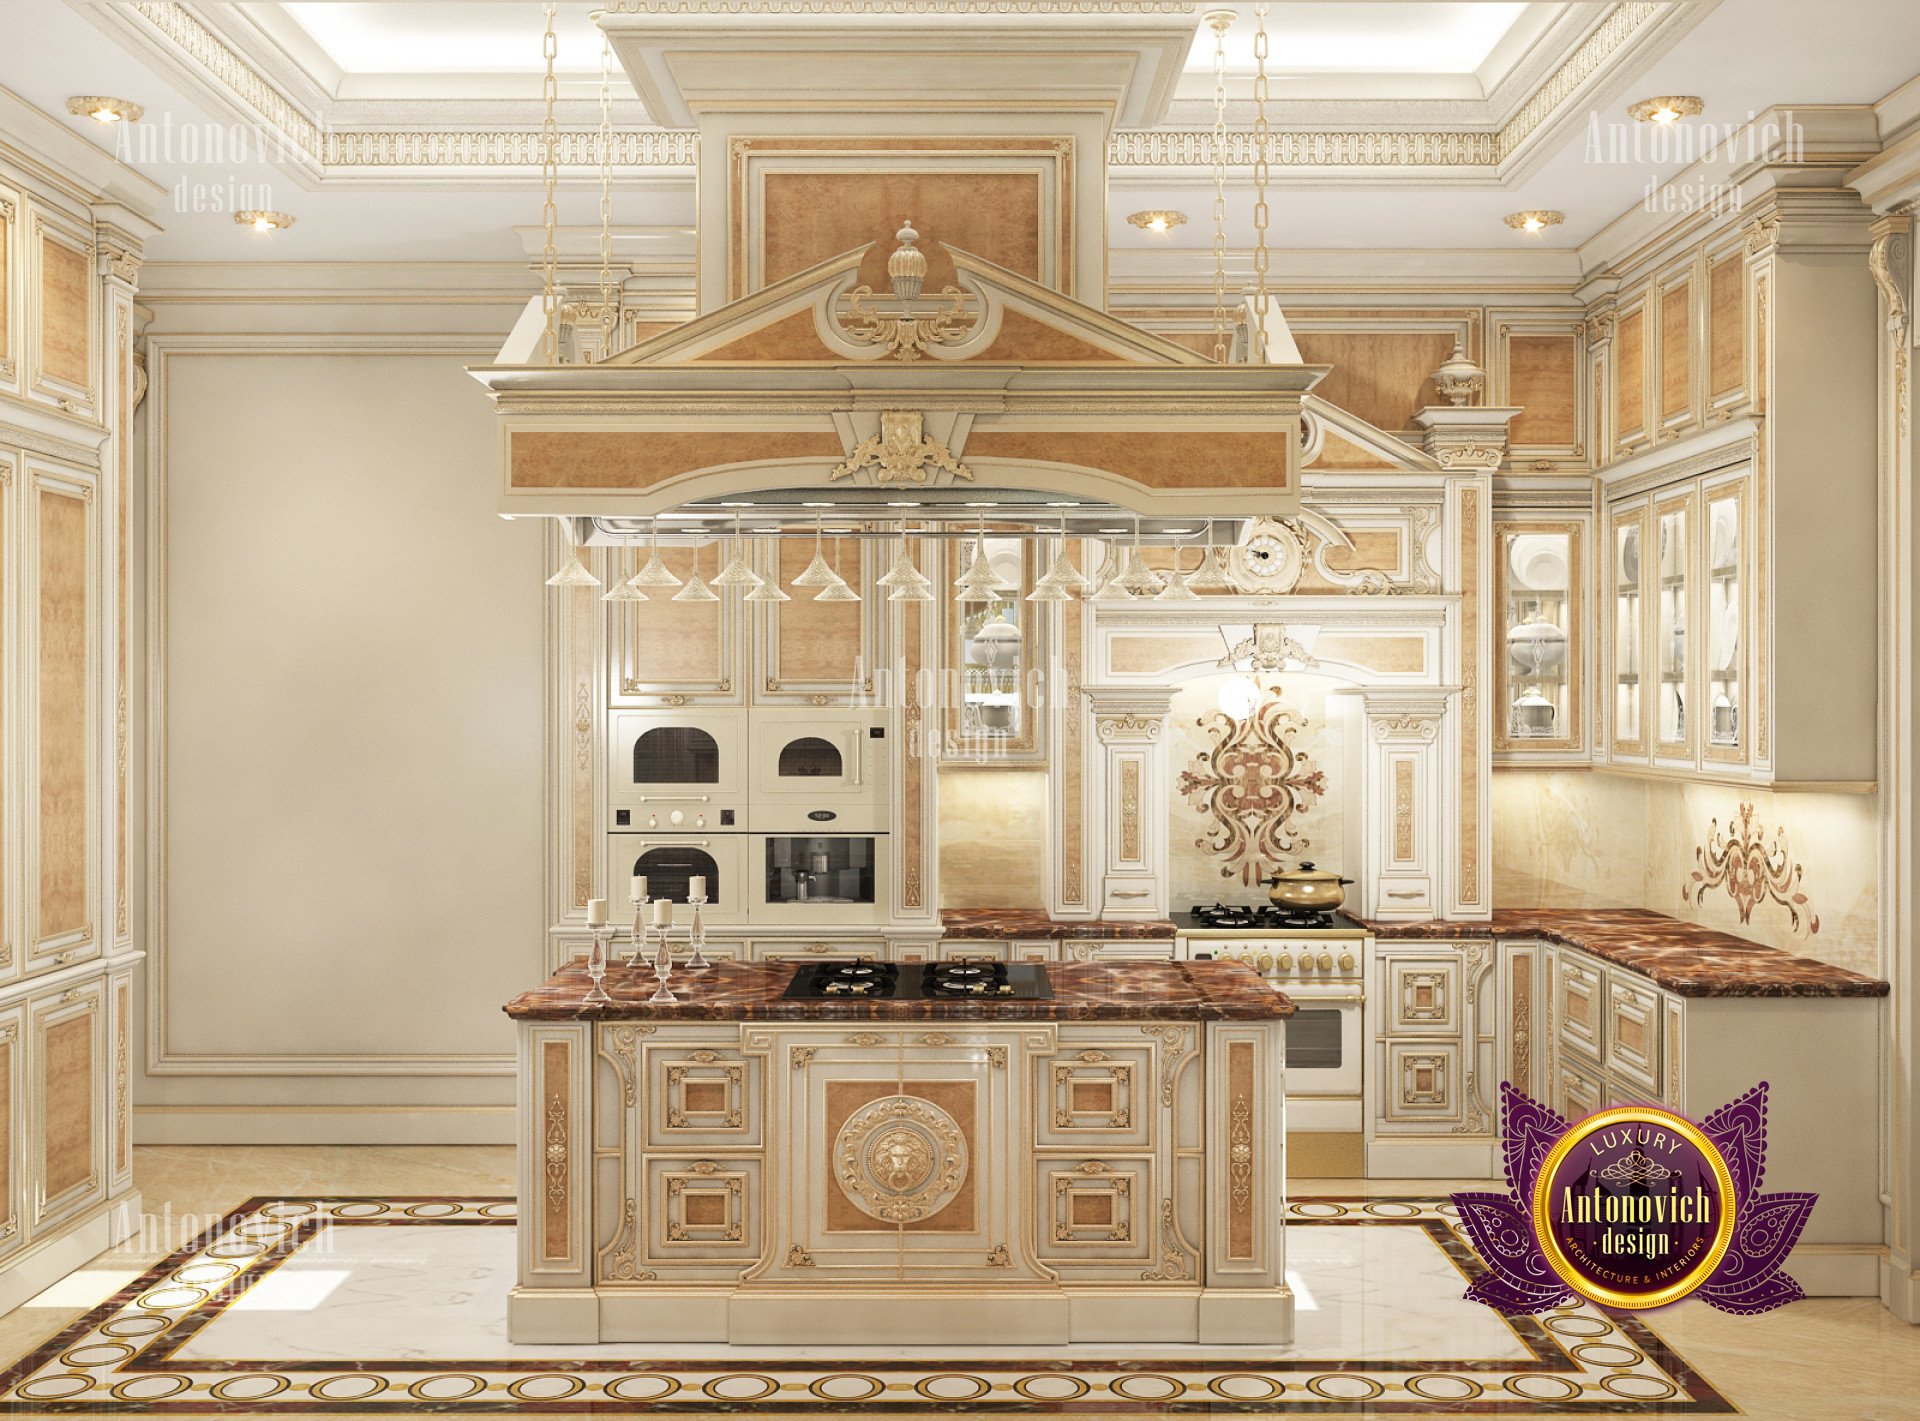  luxury kitchen interior design